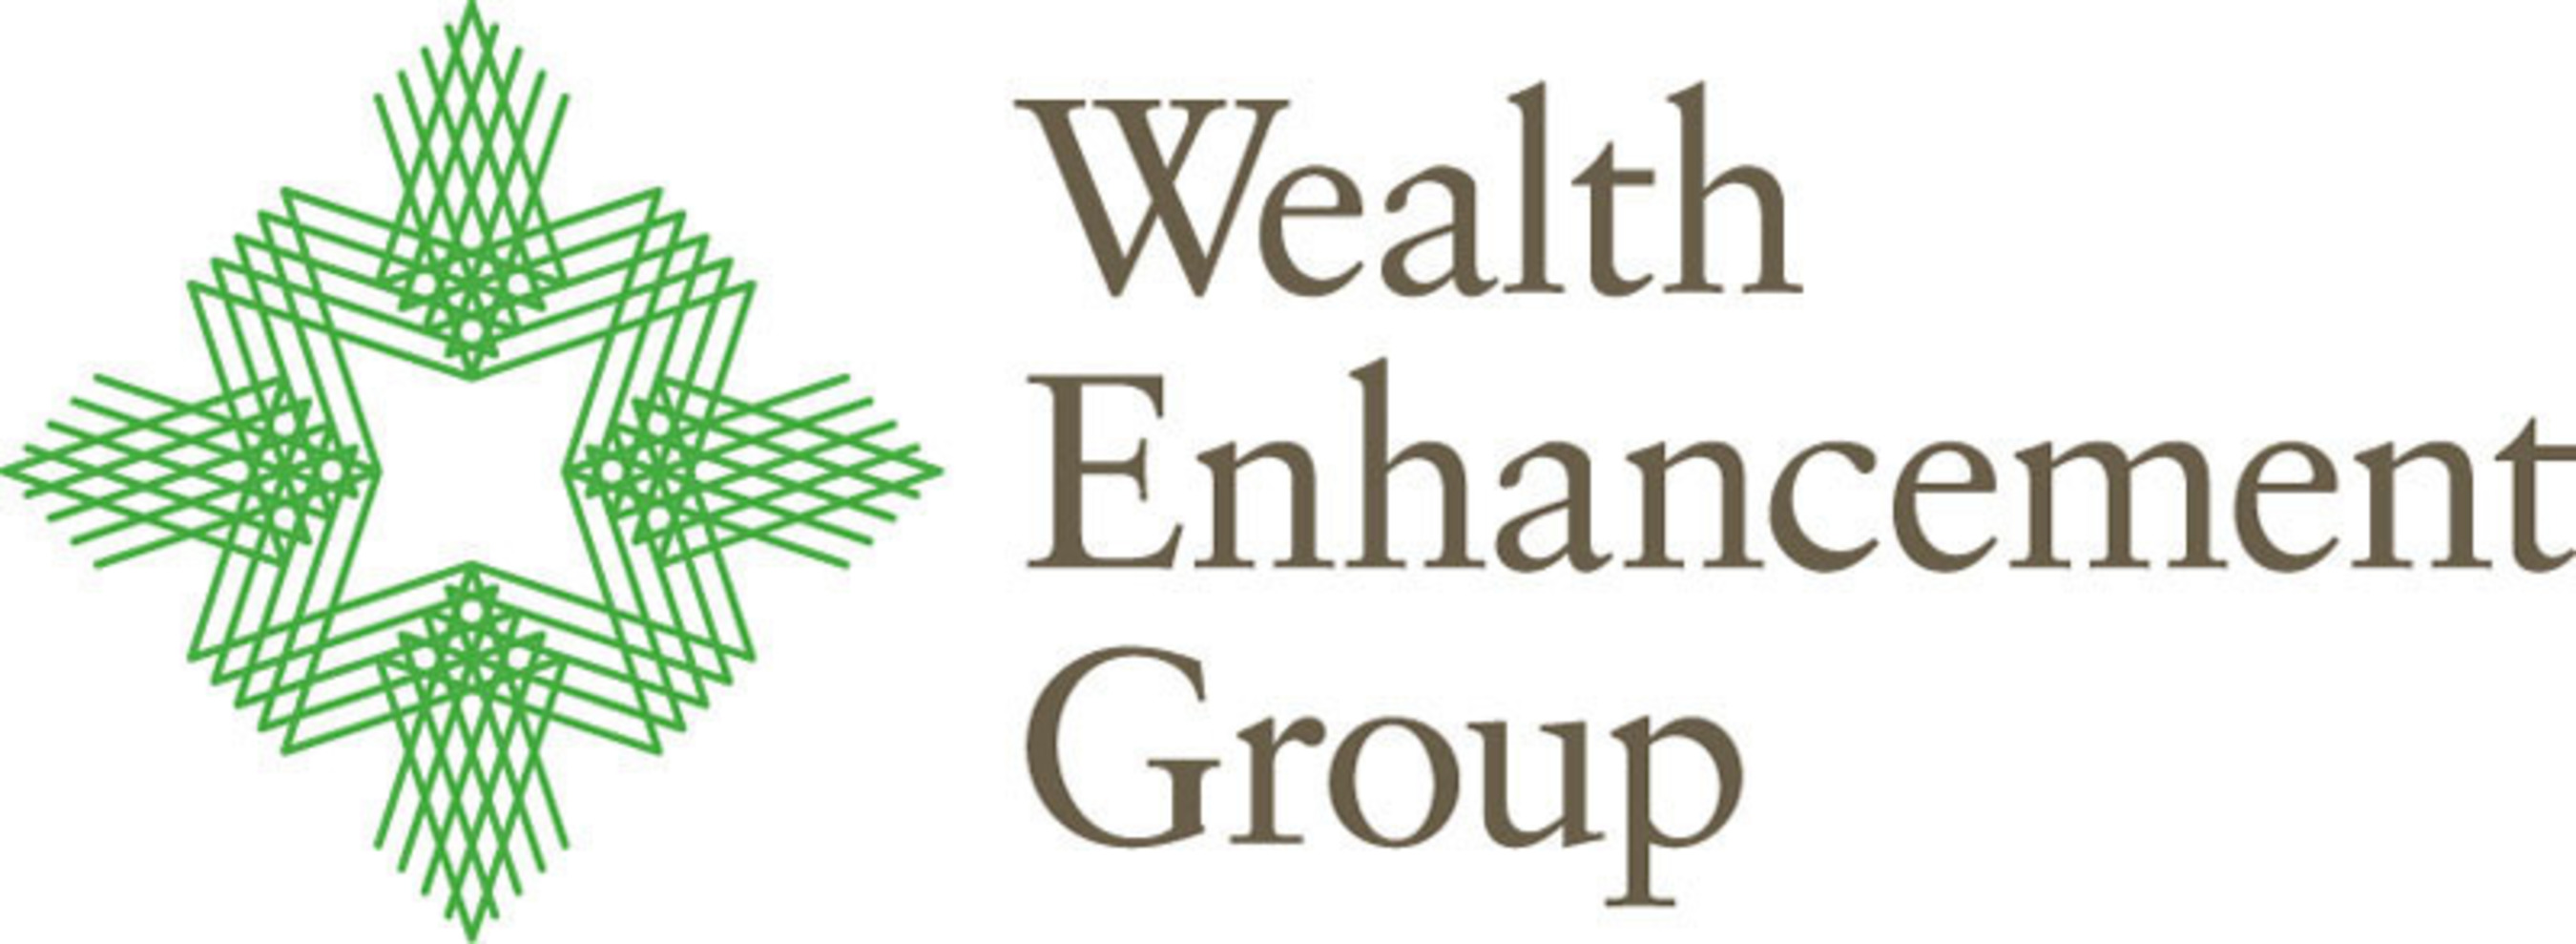 Wealth Enhancement Group. (PRNewsFoto/Wealth Enhancement Group) (PRNewsFoto/WEALTH ENHANCEMENT GROUP)